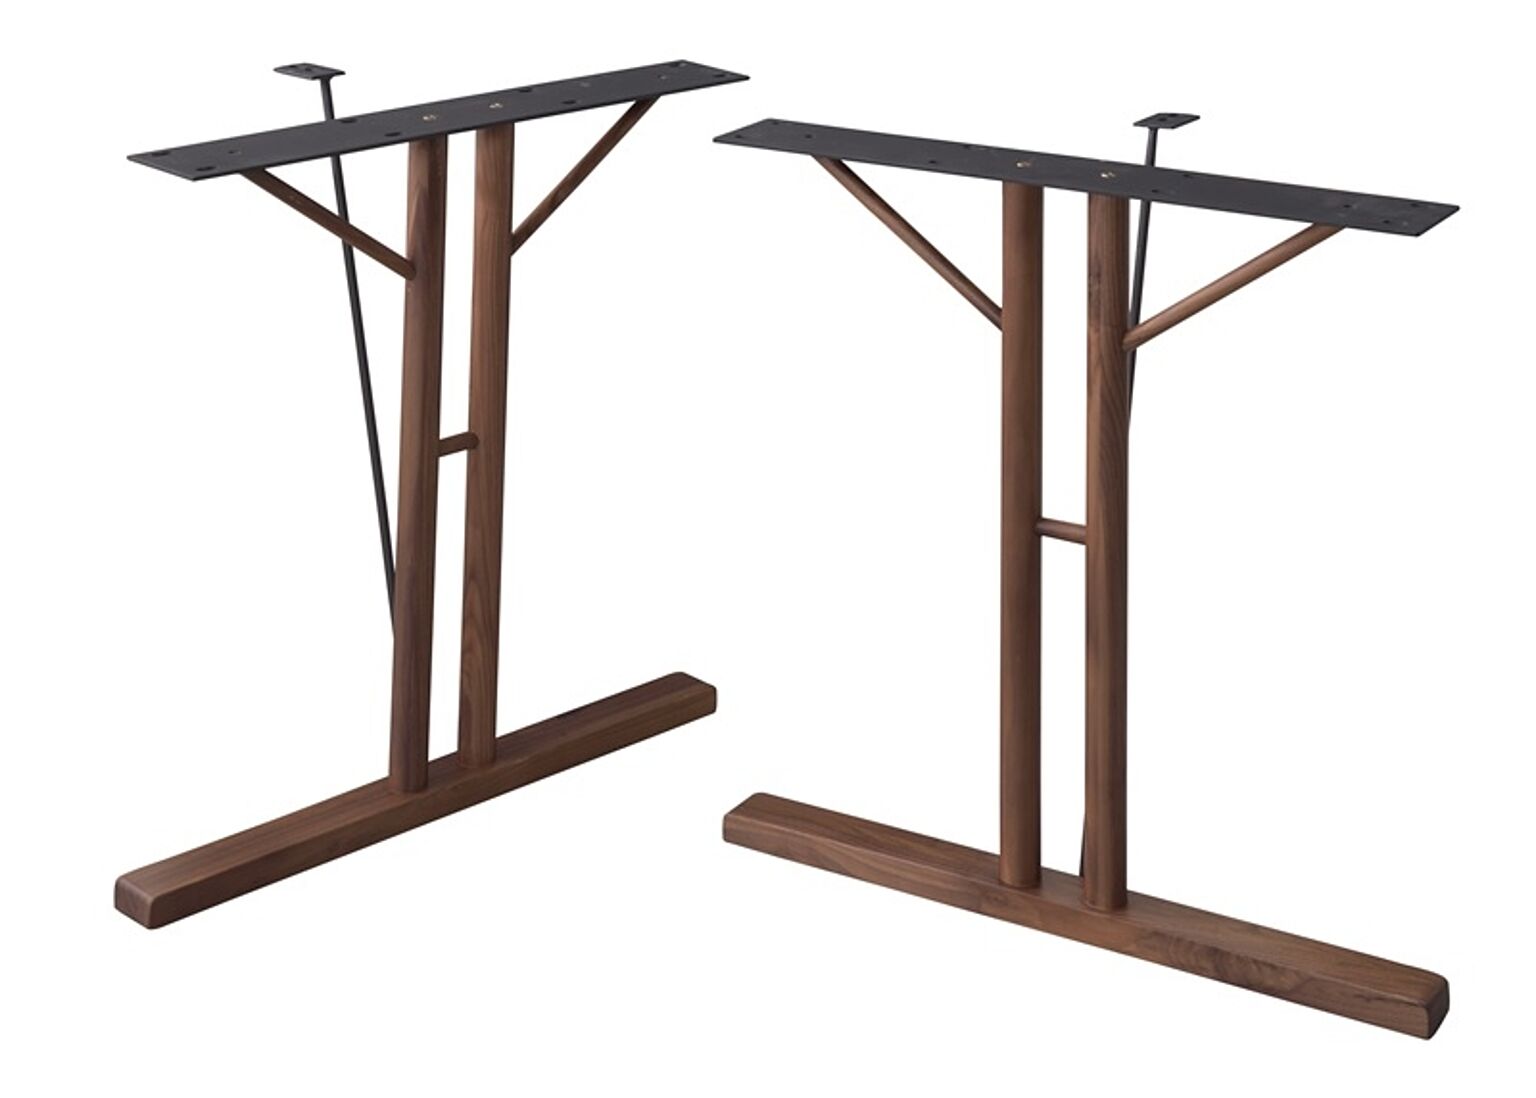 ダイニングテーブル 脚(2脚組) W66×D31.5×H68 ブラウン 脚 テーブル ダイニングテーブル パーツ 組み合わせ 脚のみ 木製脚 天然木 T型 スチール 高さ68cm ナチュラル シンプル